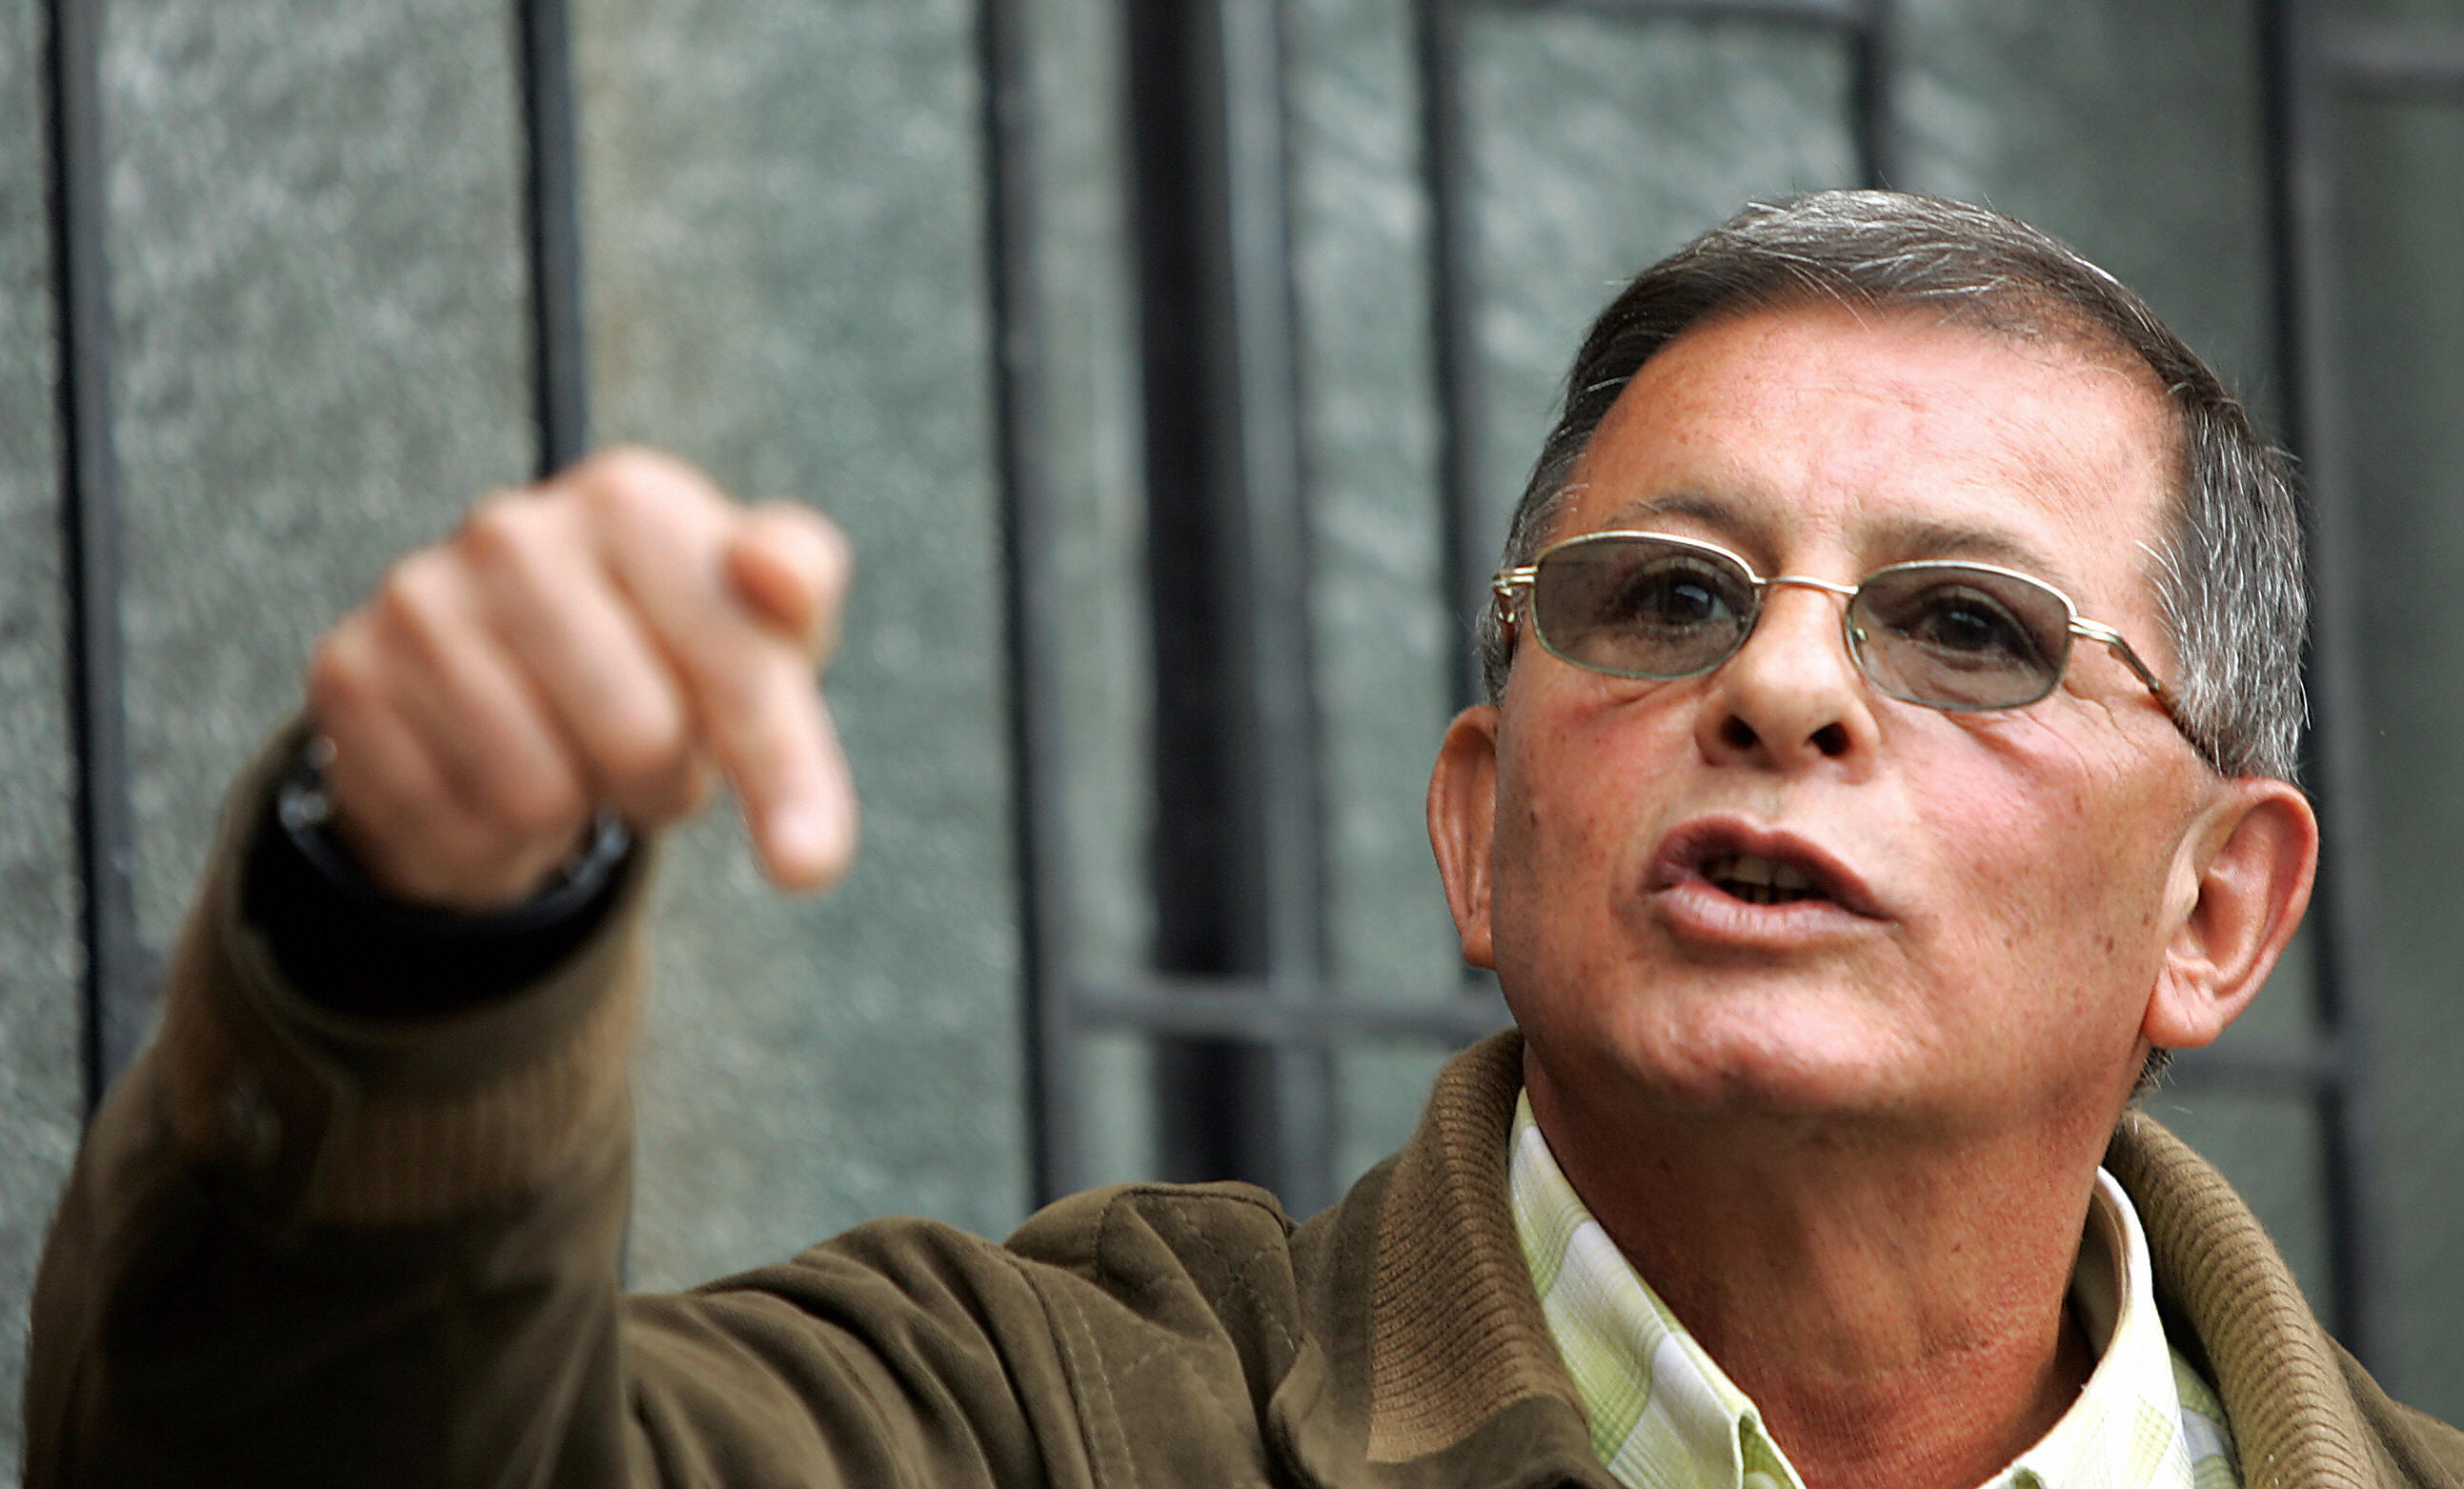 En 2005, tras la captura en Venezuela de Ricardo Téllez, alias Rodrigo Granda, líder la guerrilla de las FARC, el presidente Hugo Chávez exigió a Bogotá una disculpa por considerar que se había violado la soberanía nacional al realizar la operación sin informar a las autoridades. (Crédito: RODRIGO ARANGUA/AFP/Getty Images)